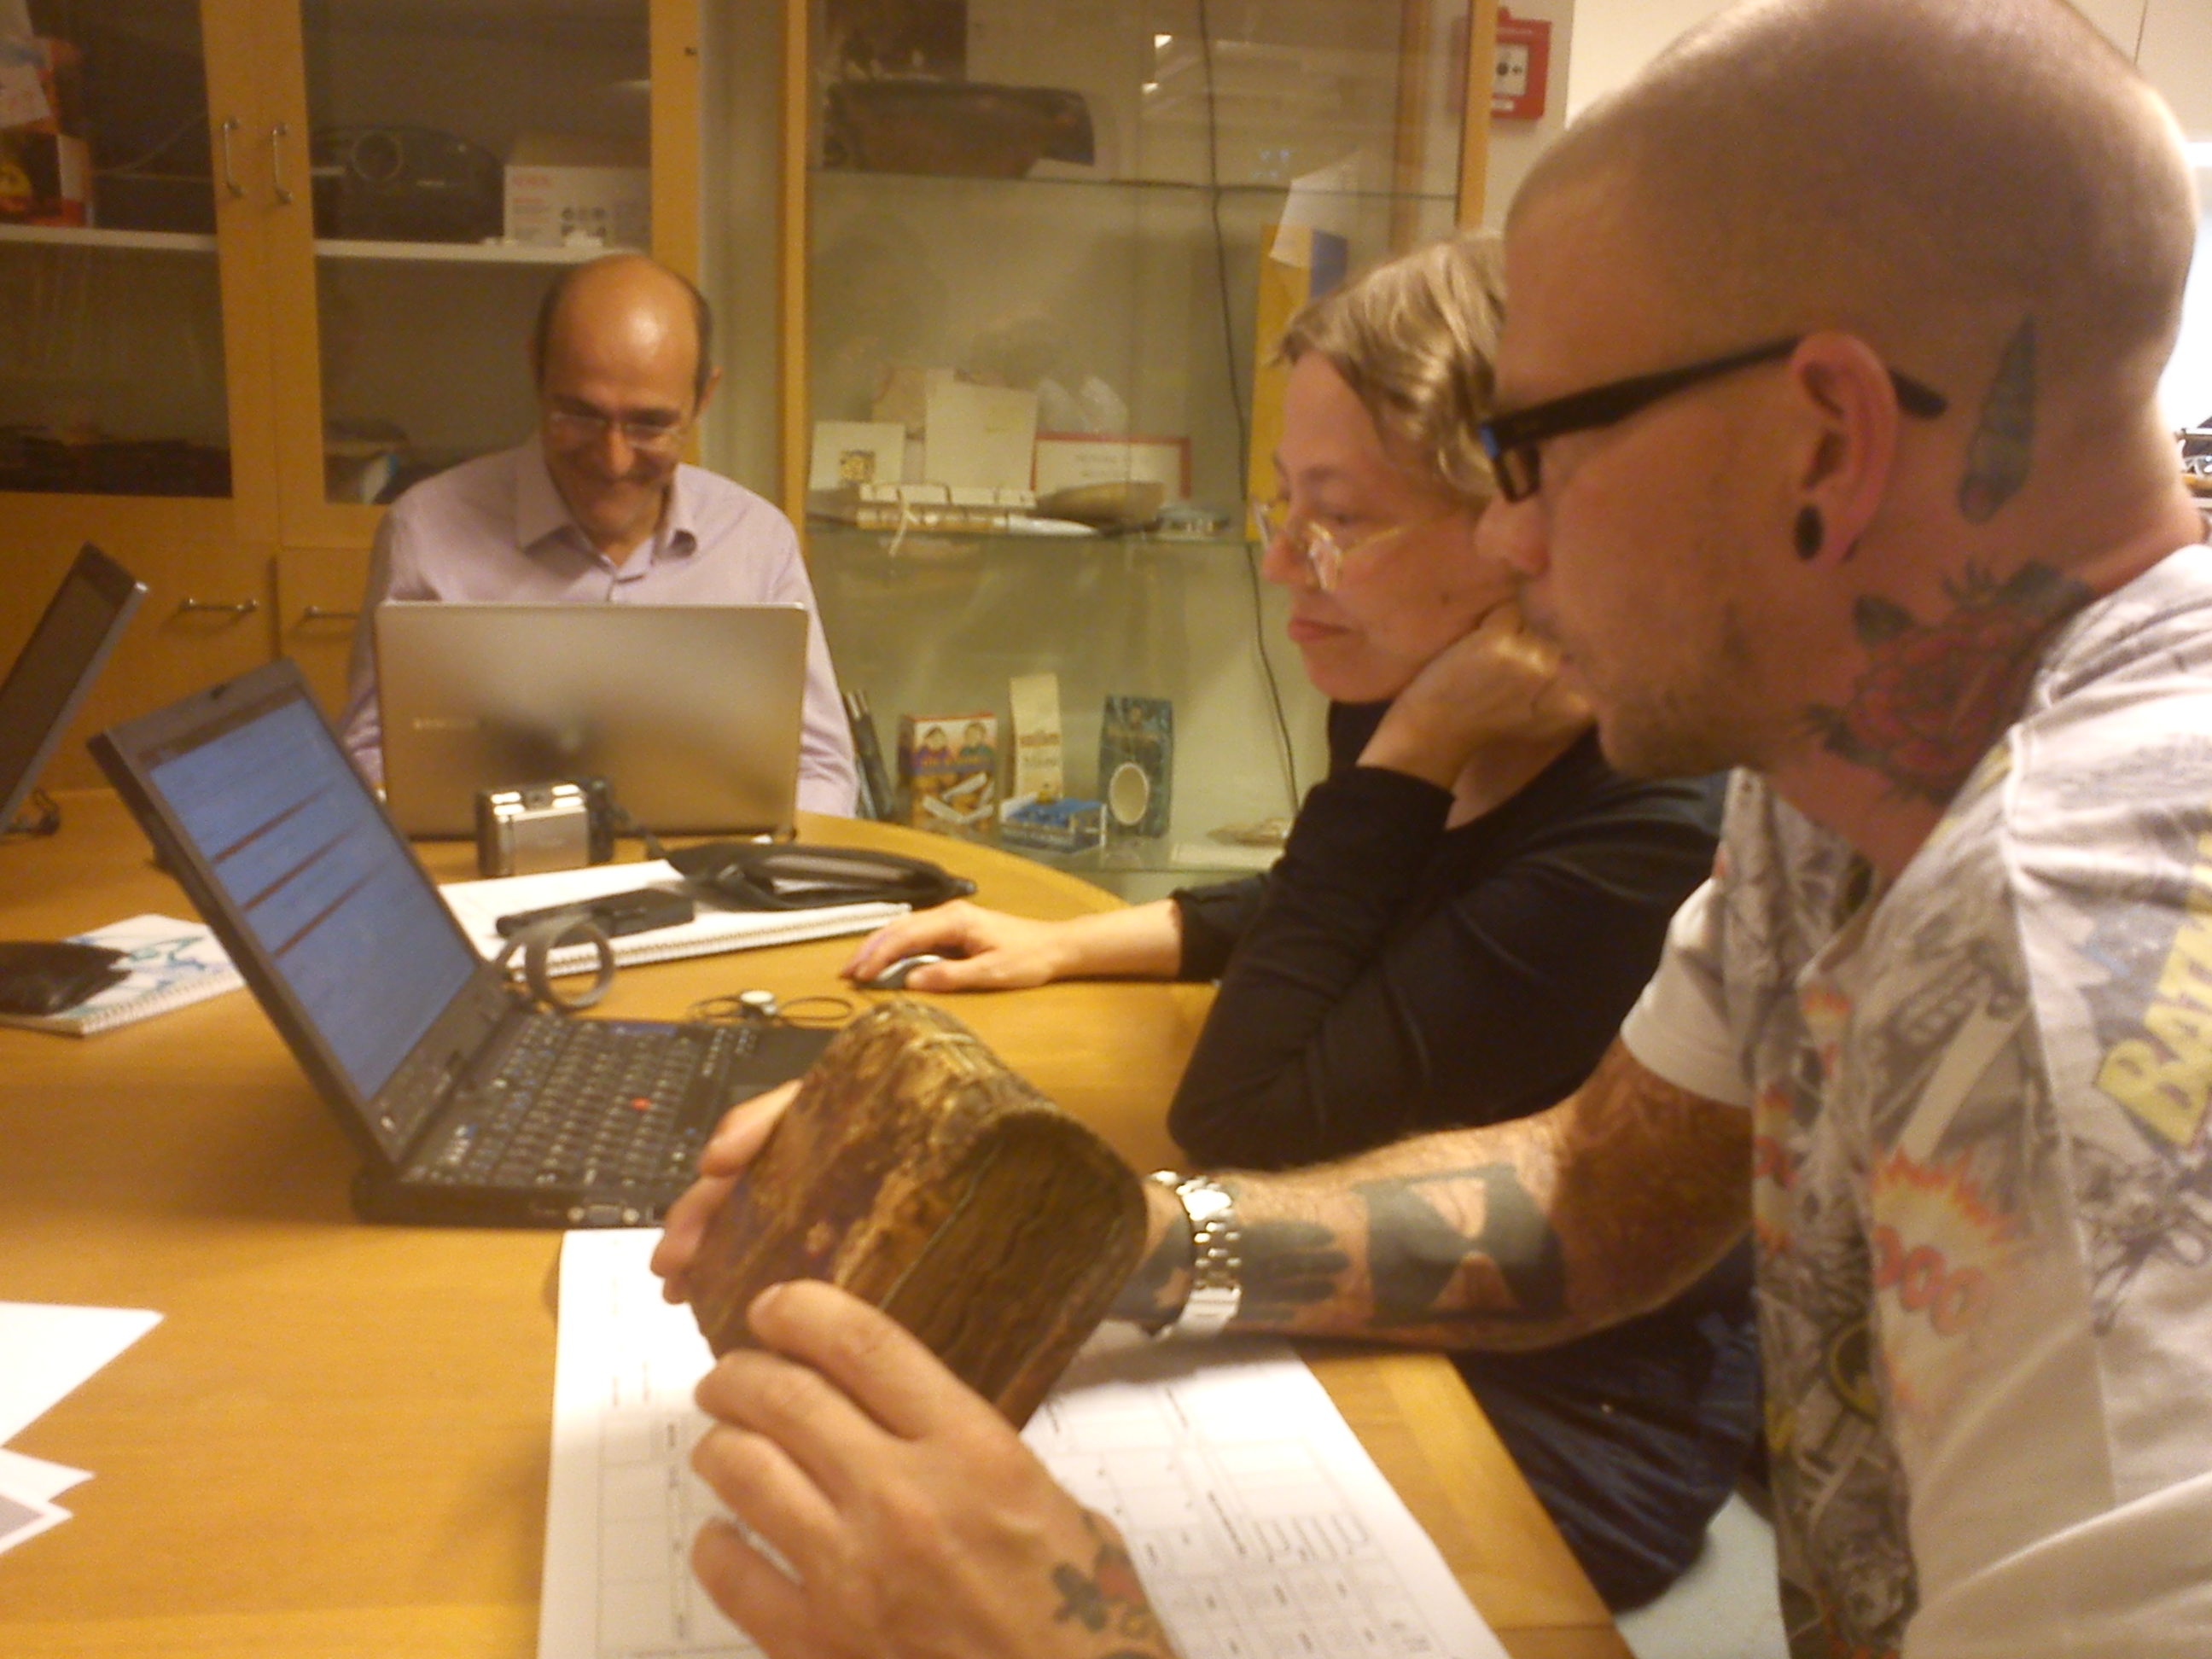 Surveying manuscripts at Carolina Rediviva